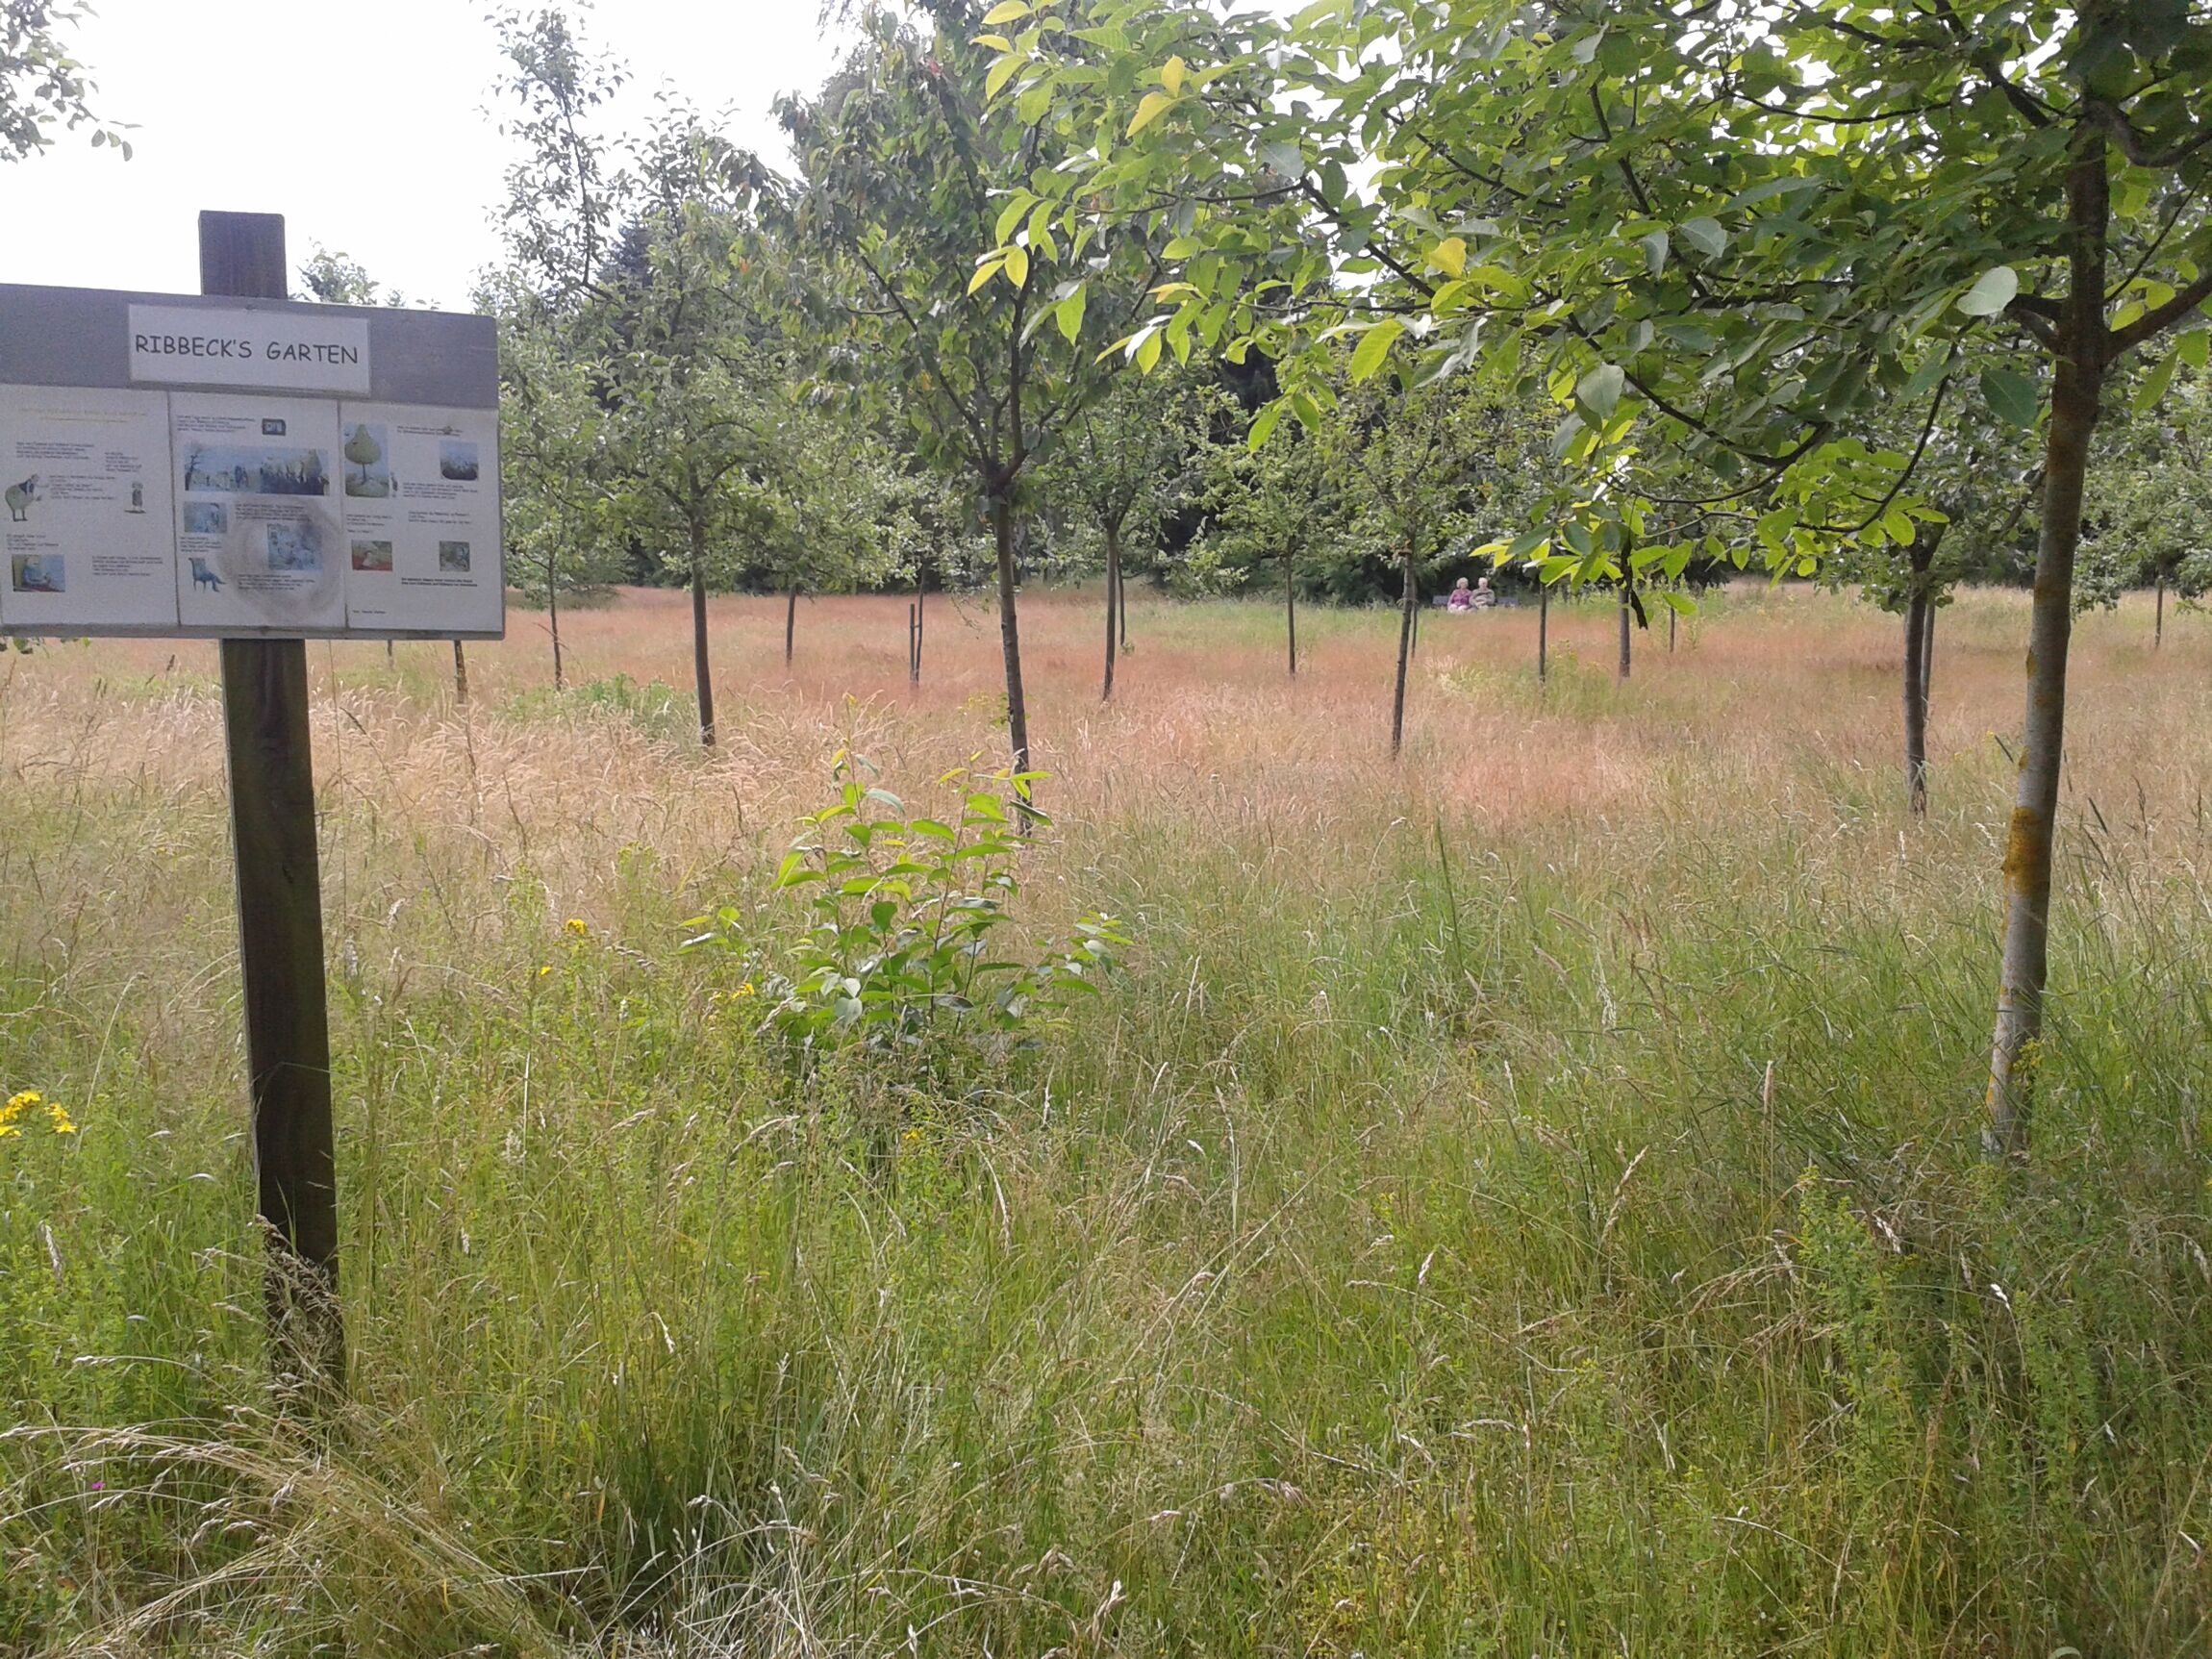 Obstbaumwiese als Bestattungsfeld